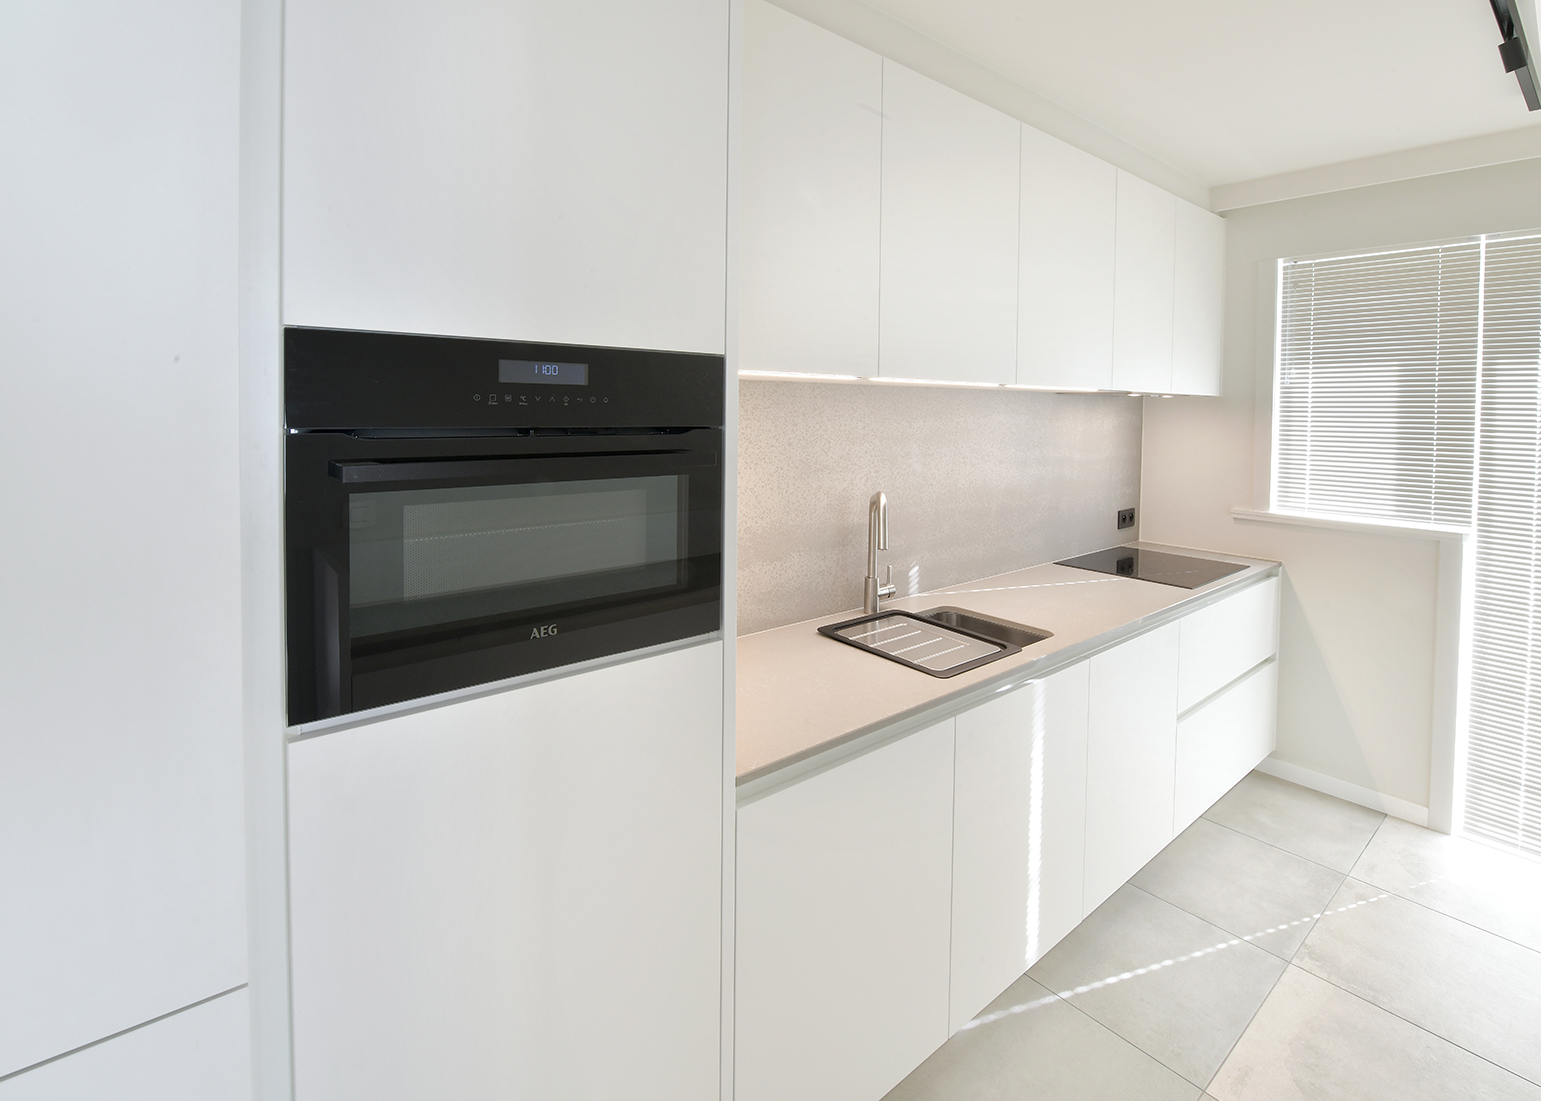 MLD Projects, dé aannemer renovatie Gent voor uw appartement